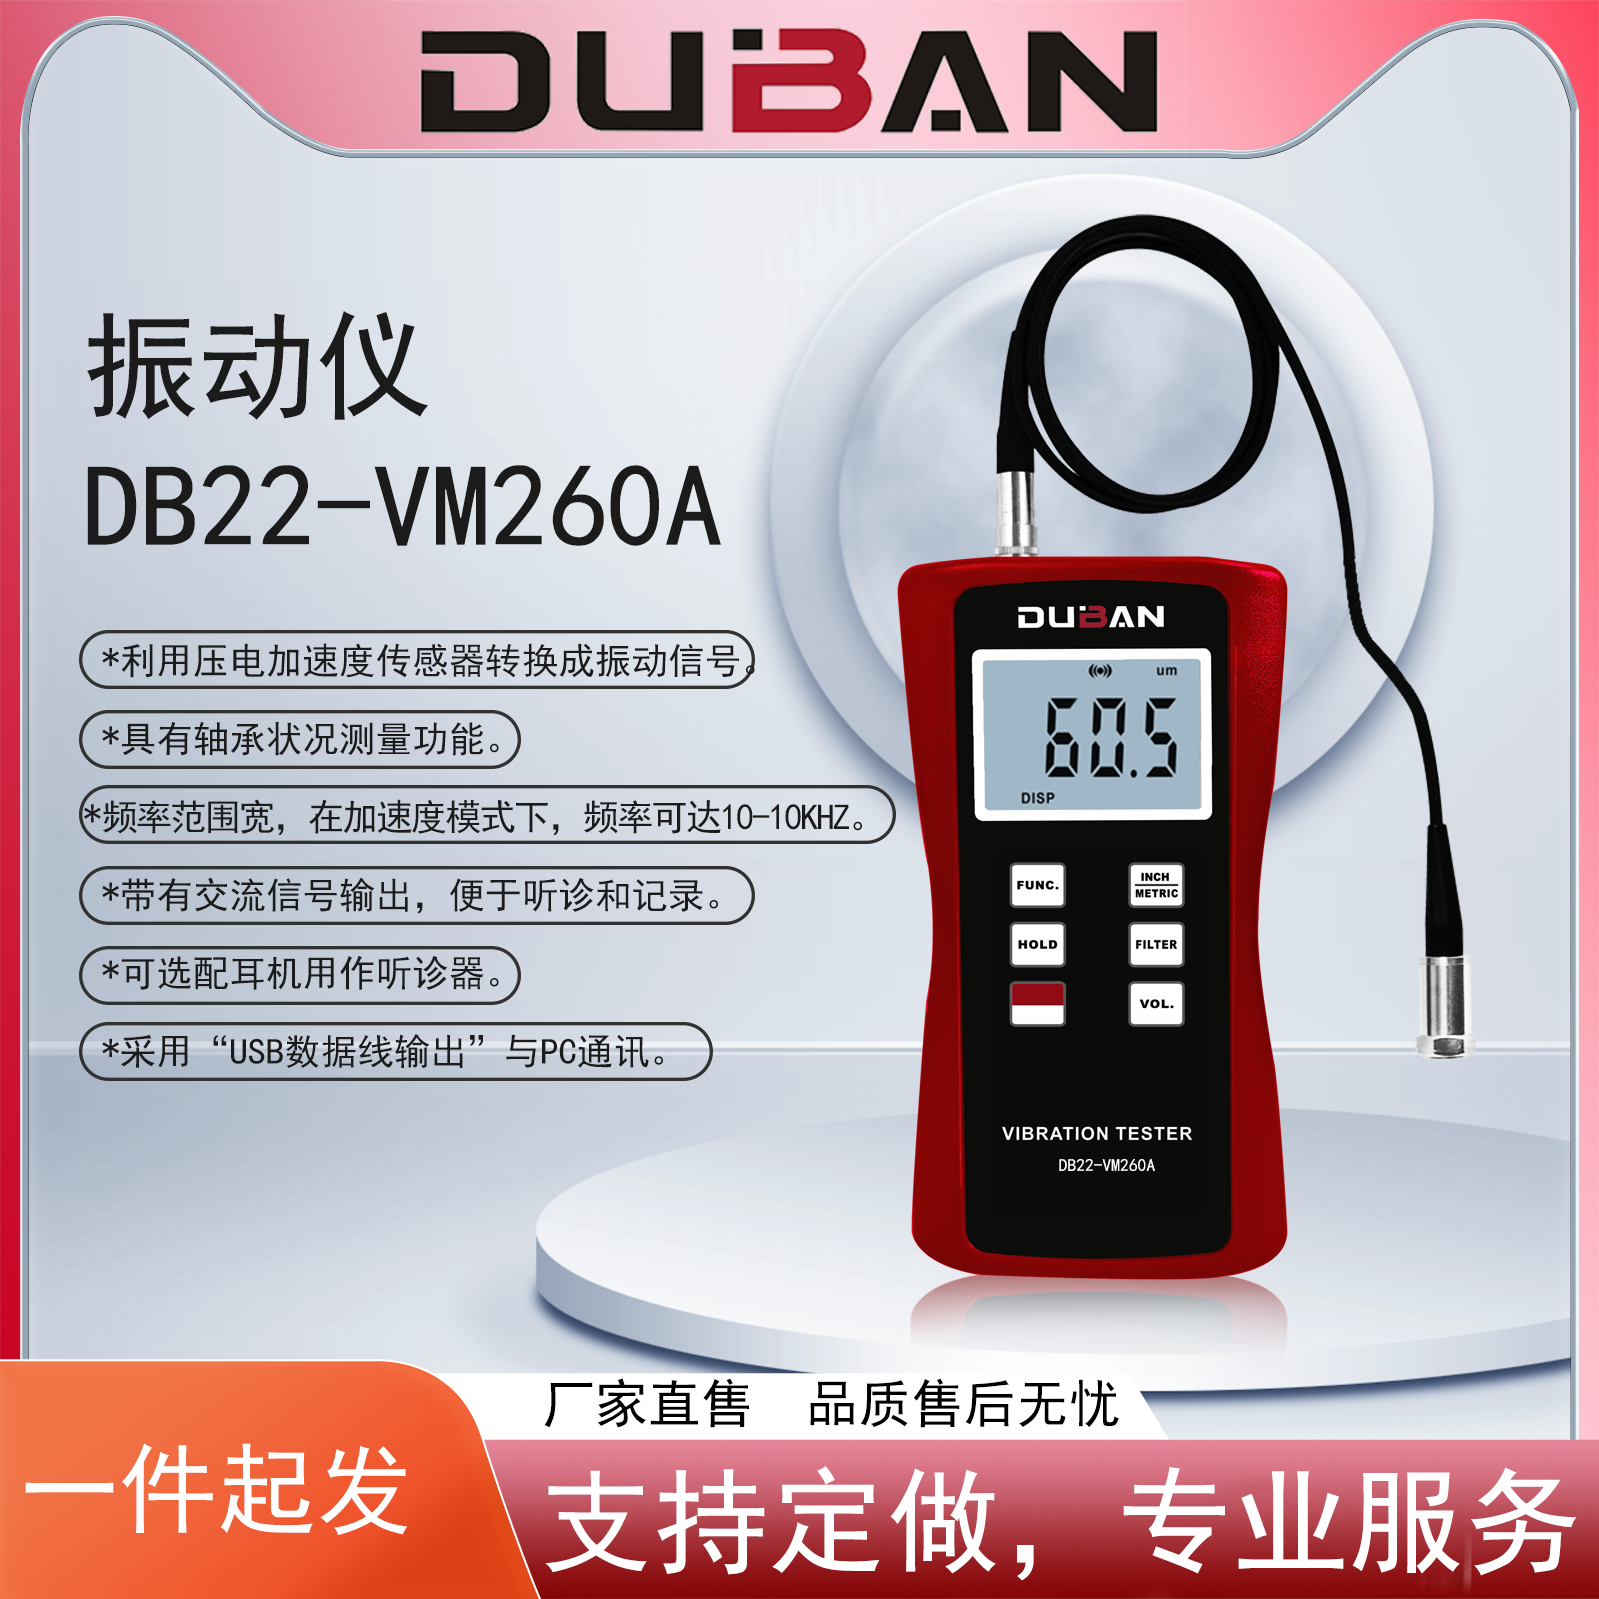 佛山市振动仪 DB22-VM260A厂家